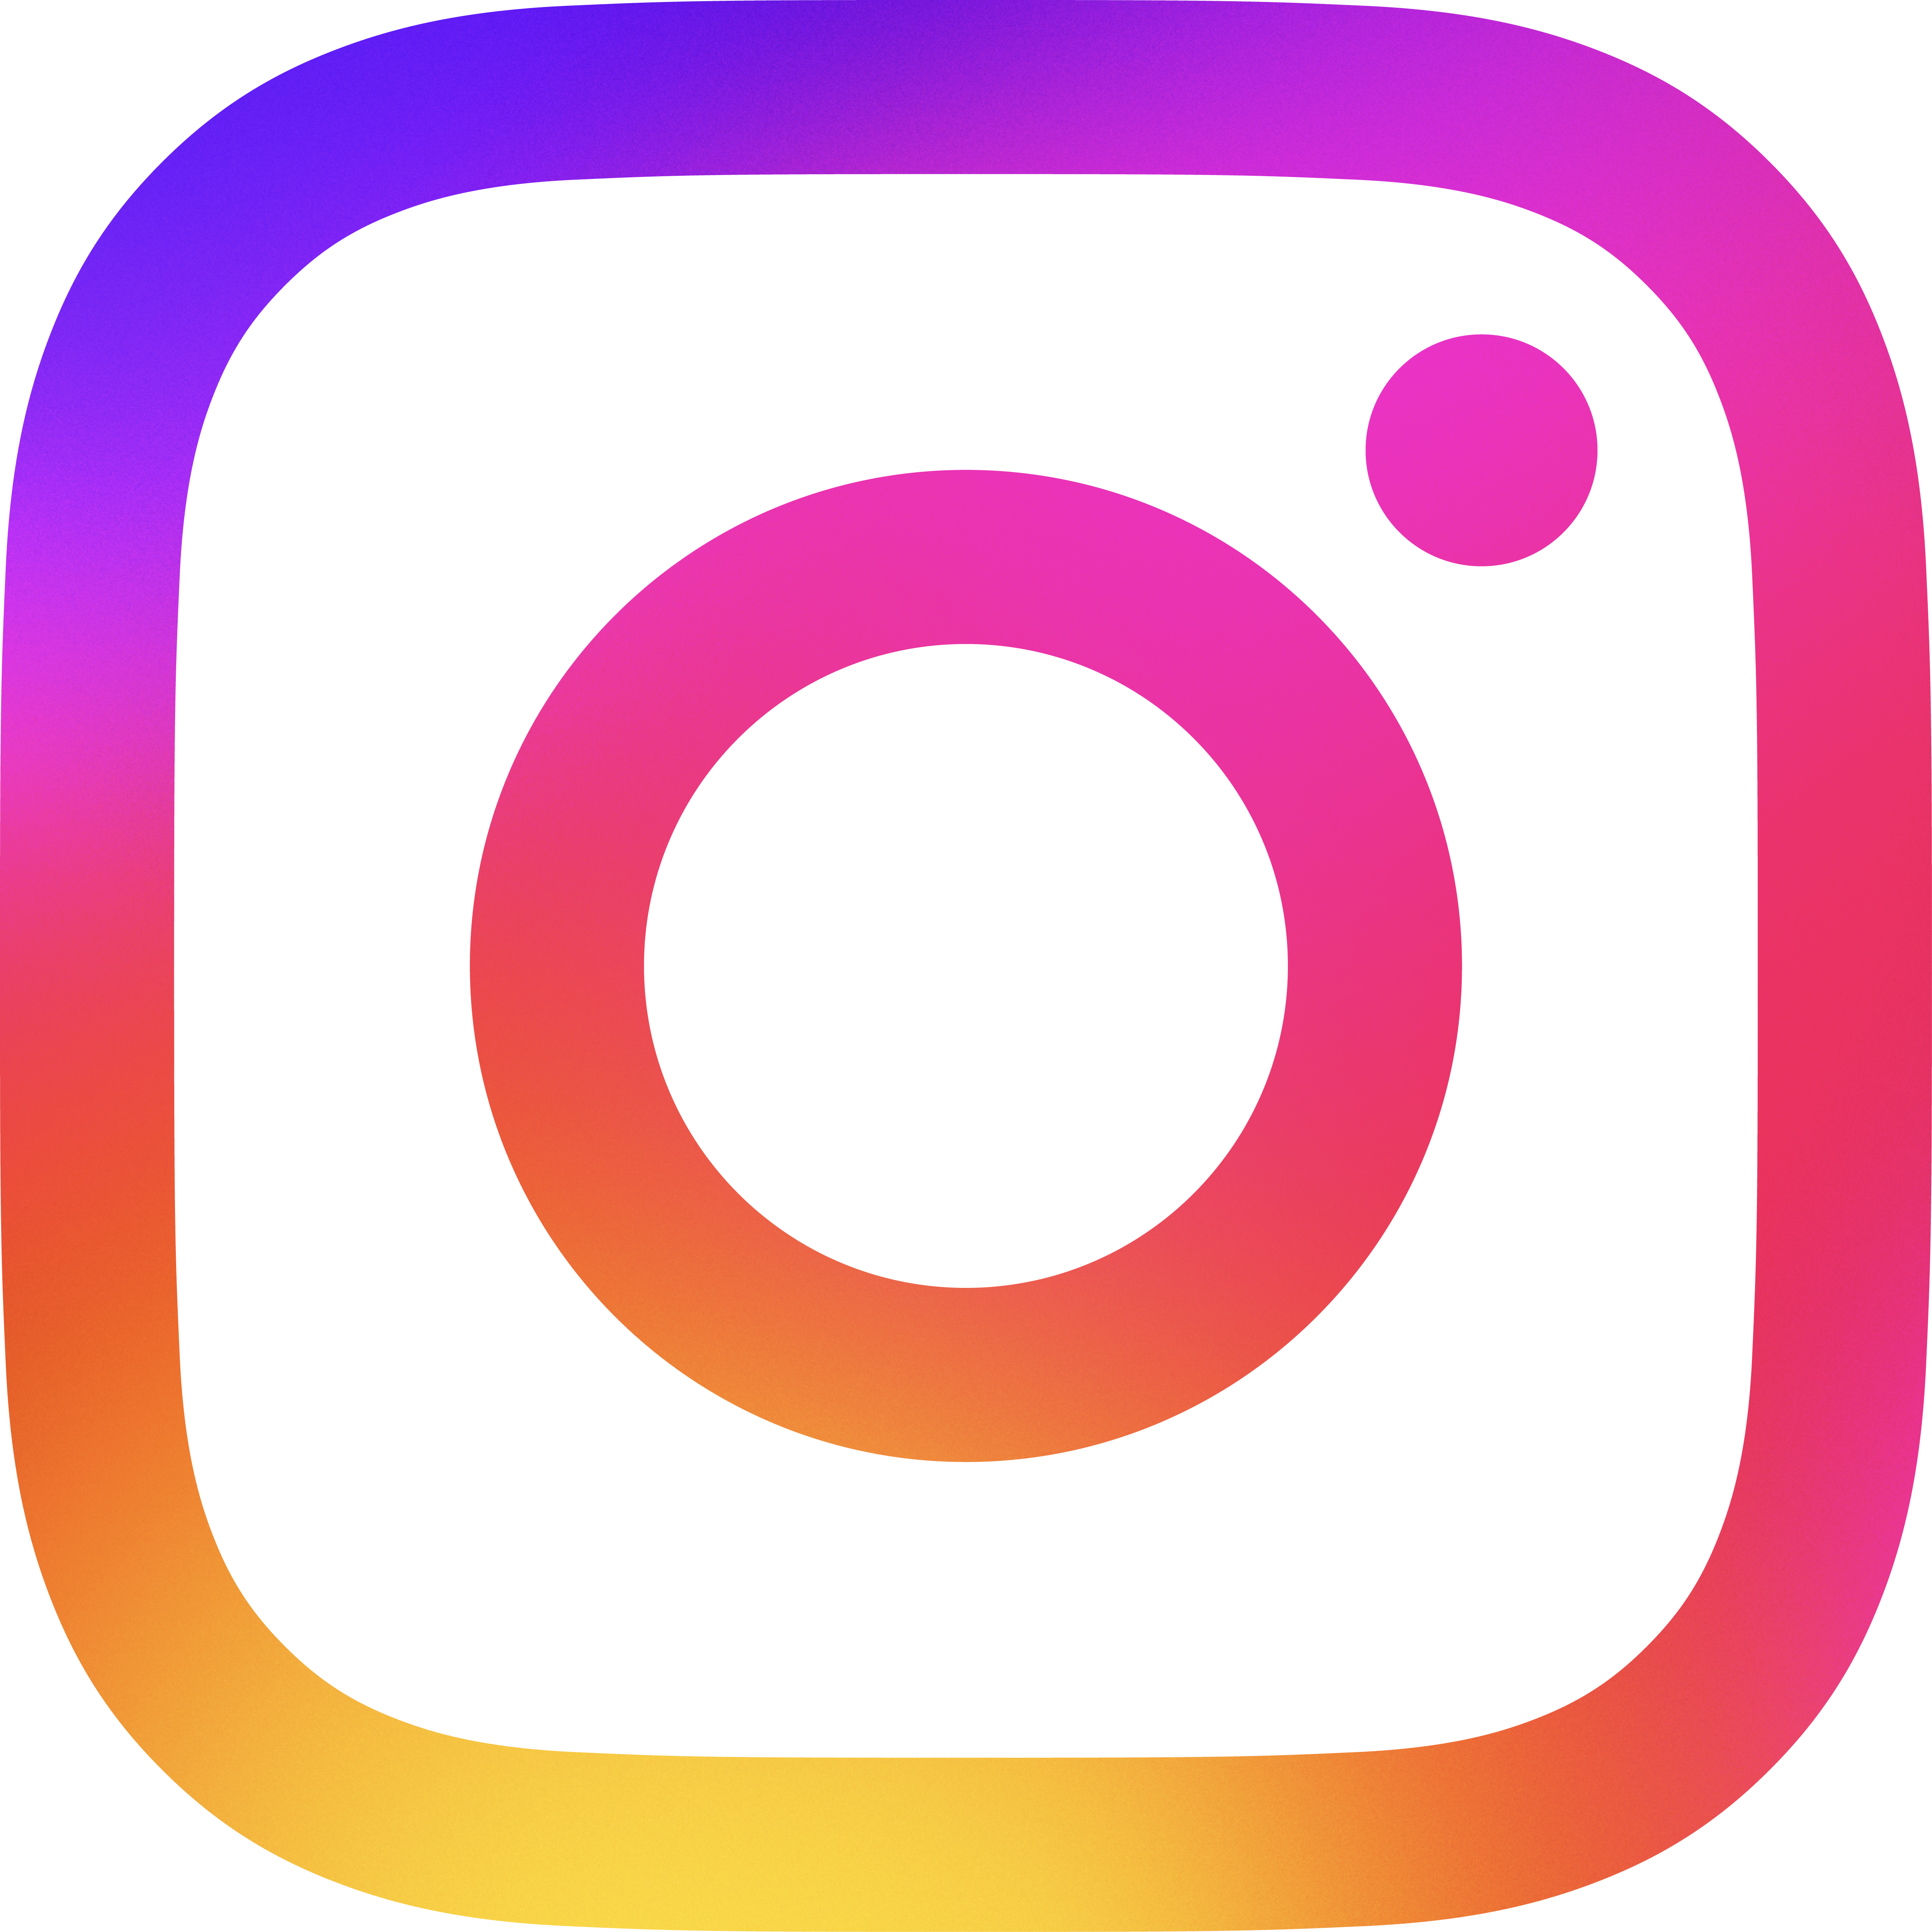 Follow Zwergenmeer on Instagram